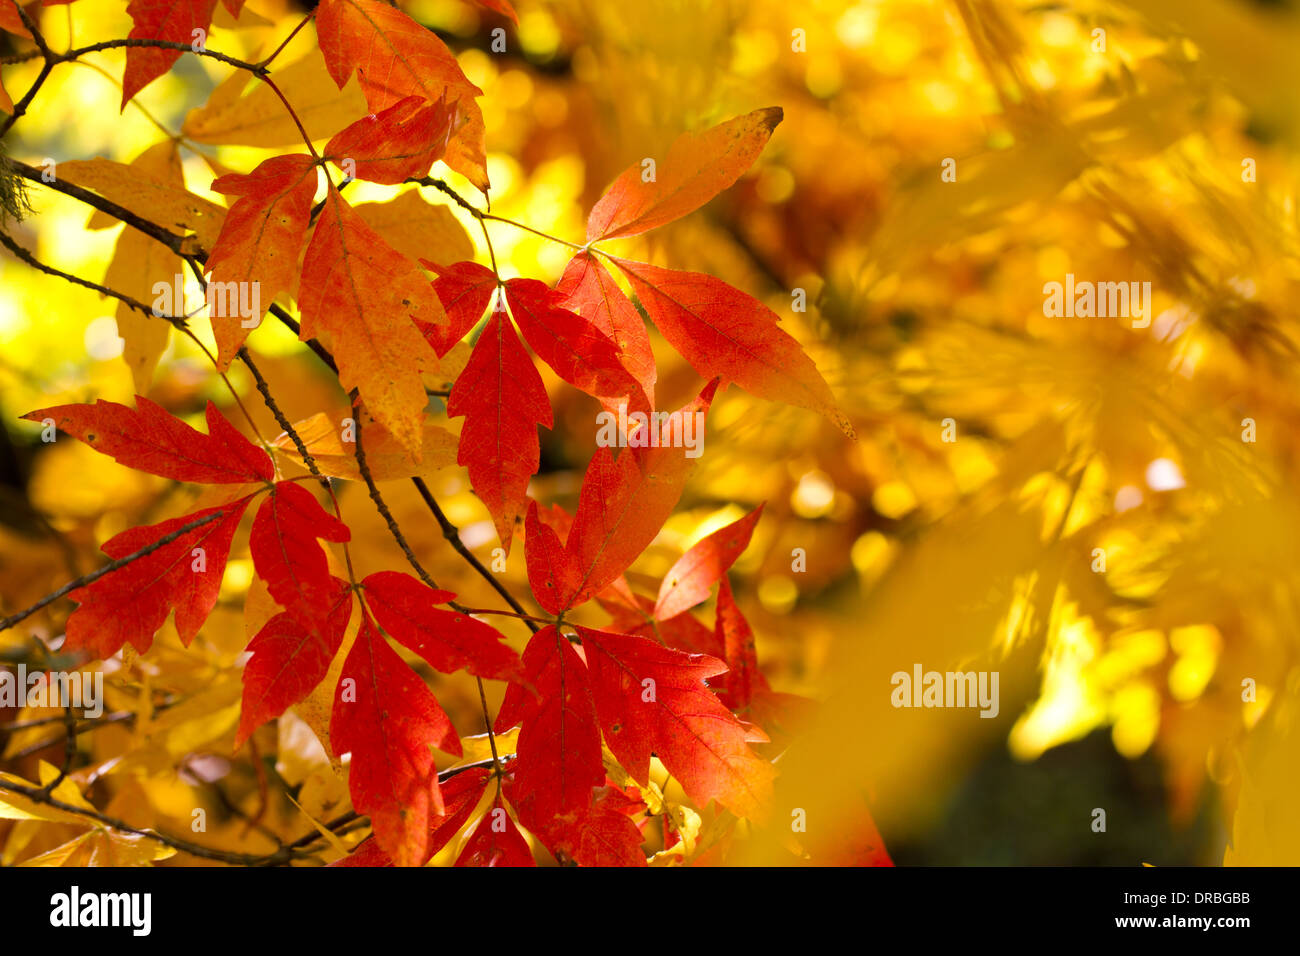 Drei-Blatt-Ahorn (Acer Trifolium) Blätter an einem Baum im Herbst. Herefordshire, England. Oktober. Stockfoto